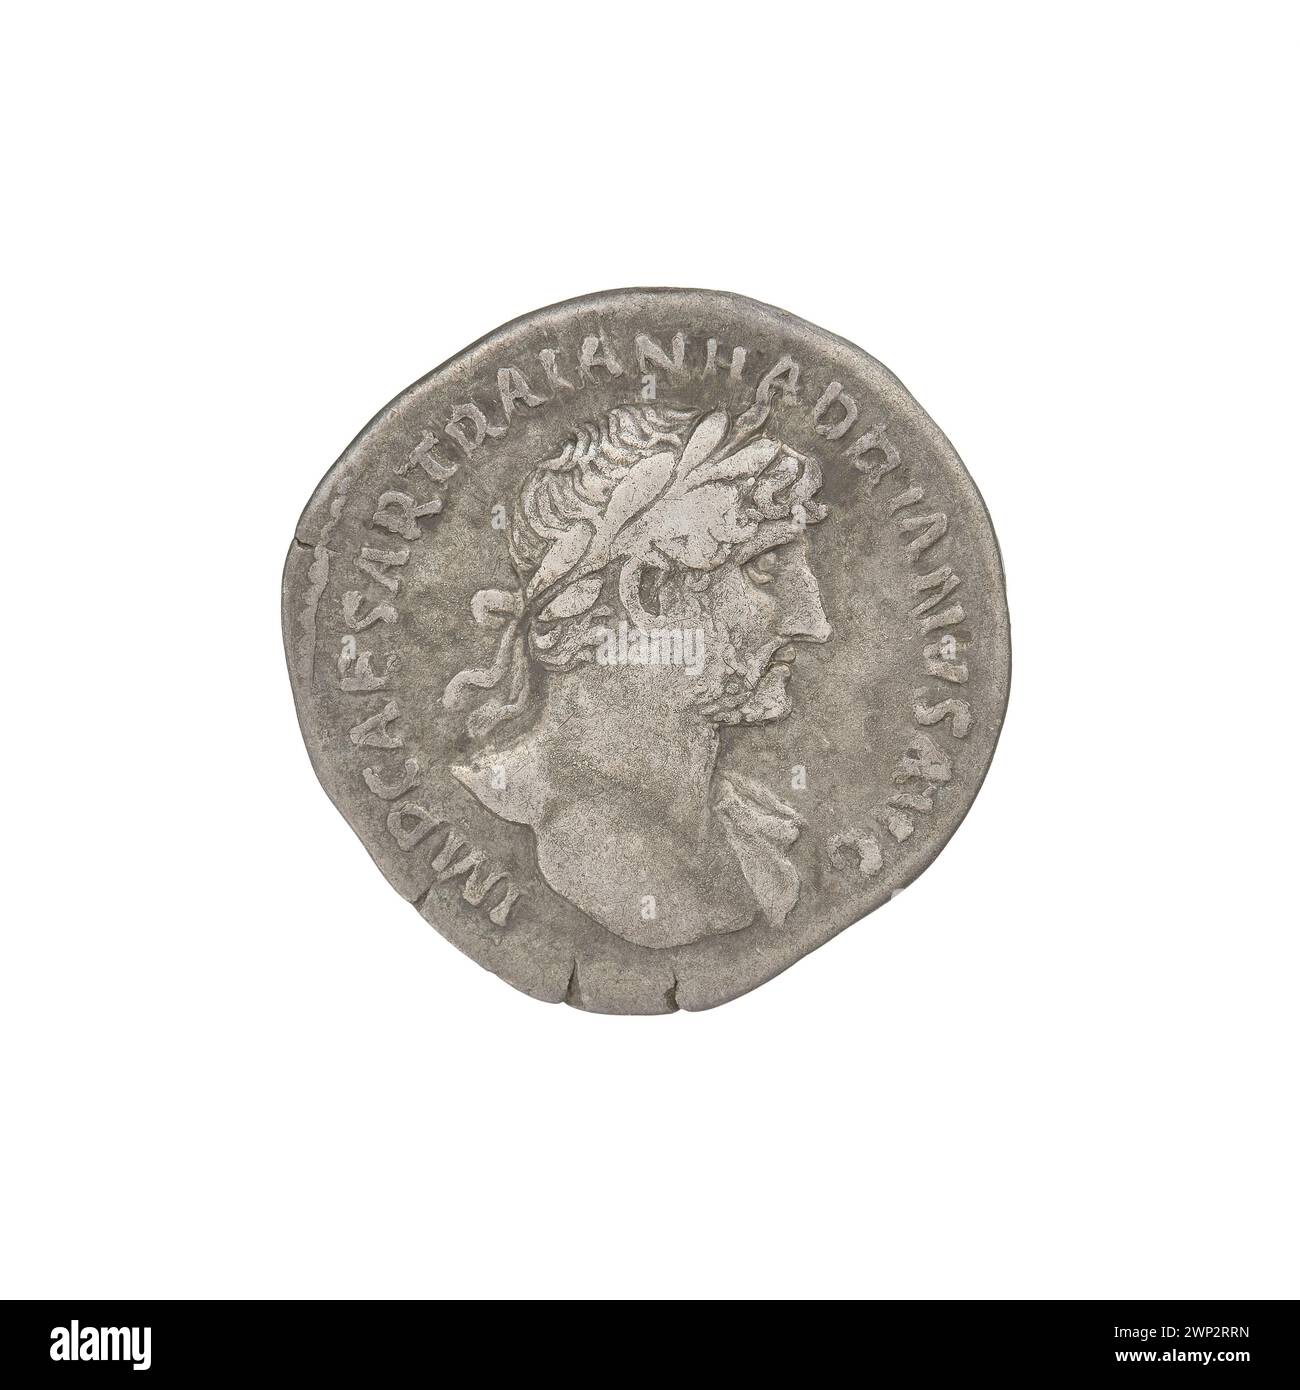 denarius; Hadrian (76-138; Roman emperor 117-138); 119-122 (118-00-00-118-00-00);Salus (personification), busts, laurel wreaths Stock Photo